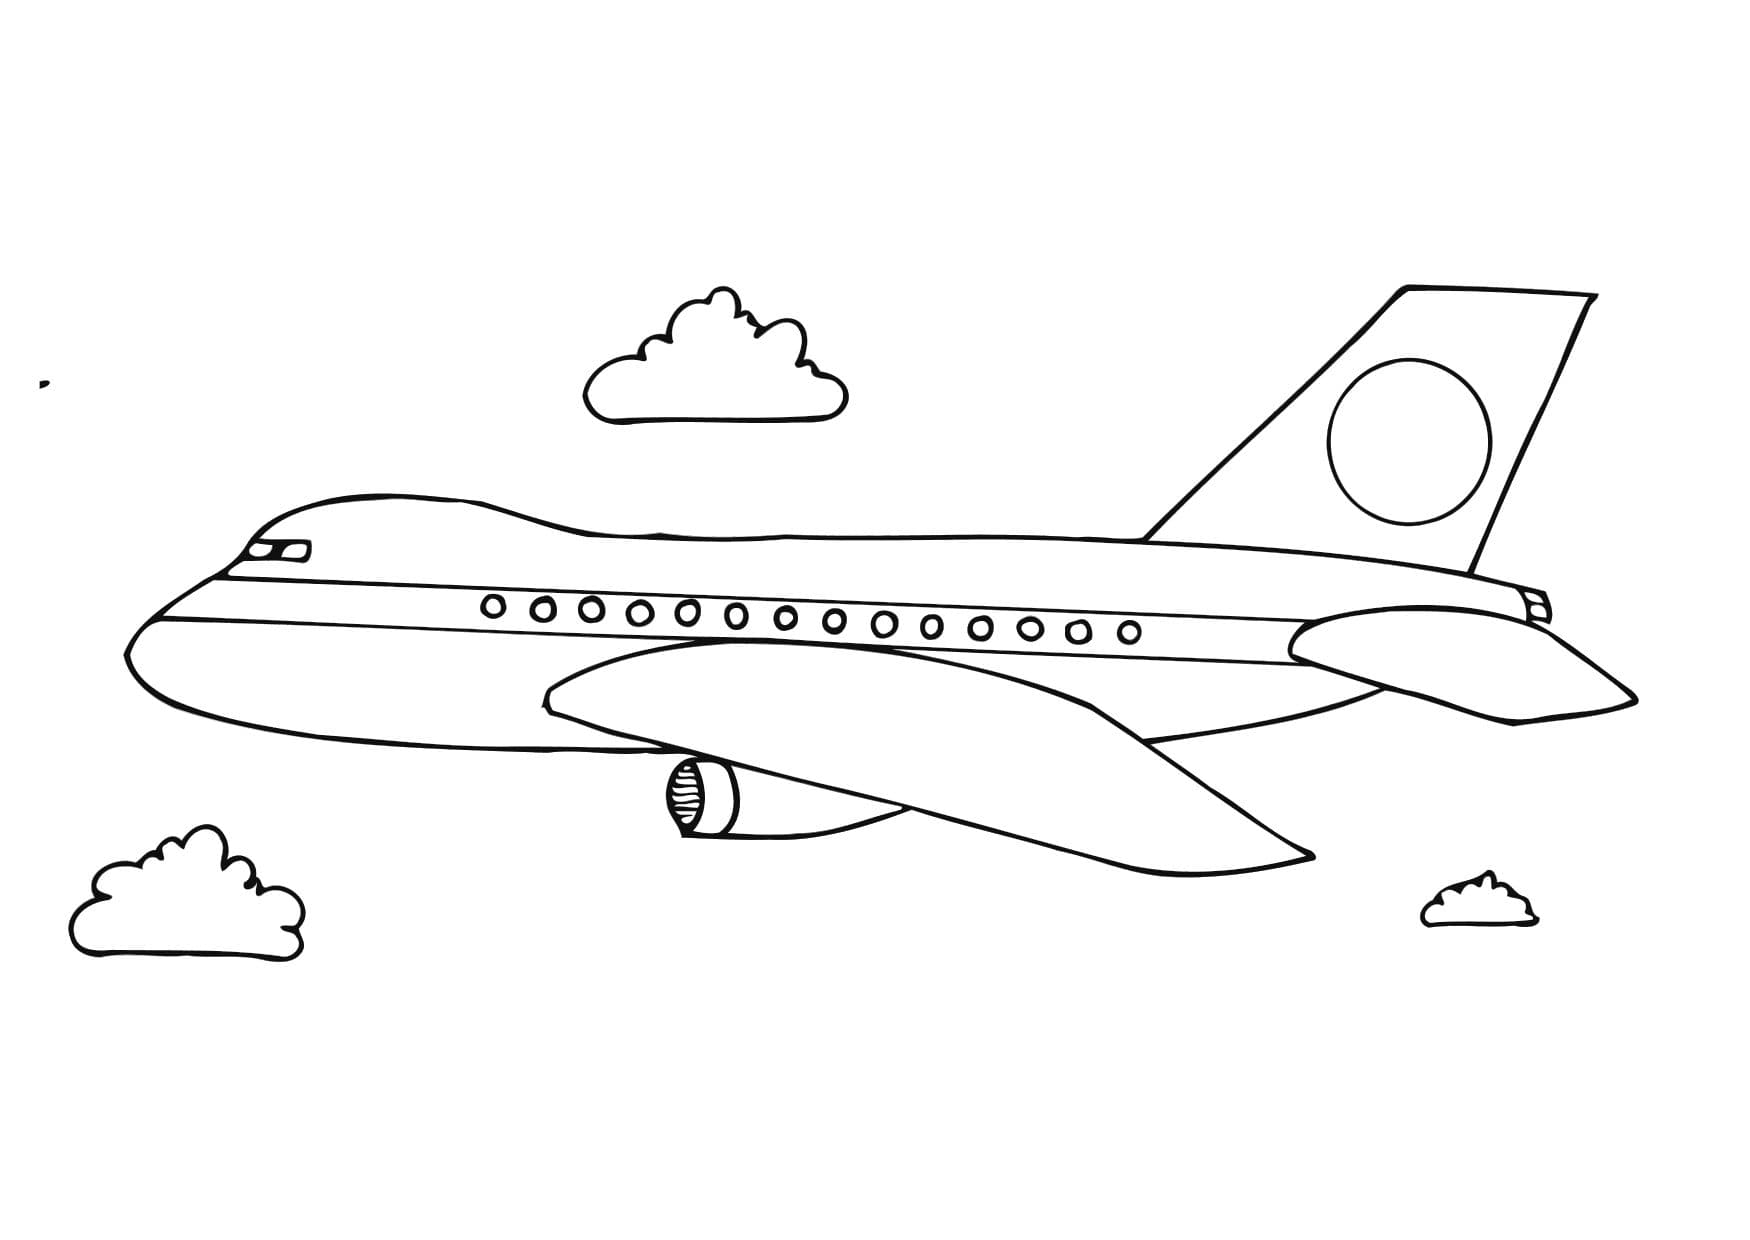 Раскраски самолётов для мальчиков — Распечатать можно онлайн!